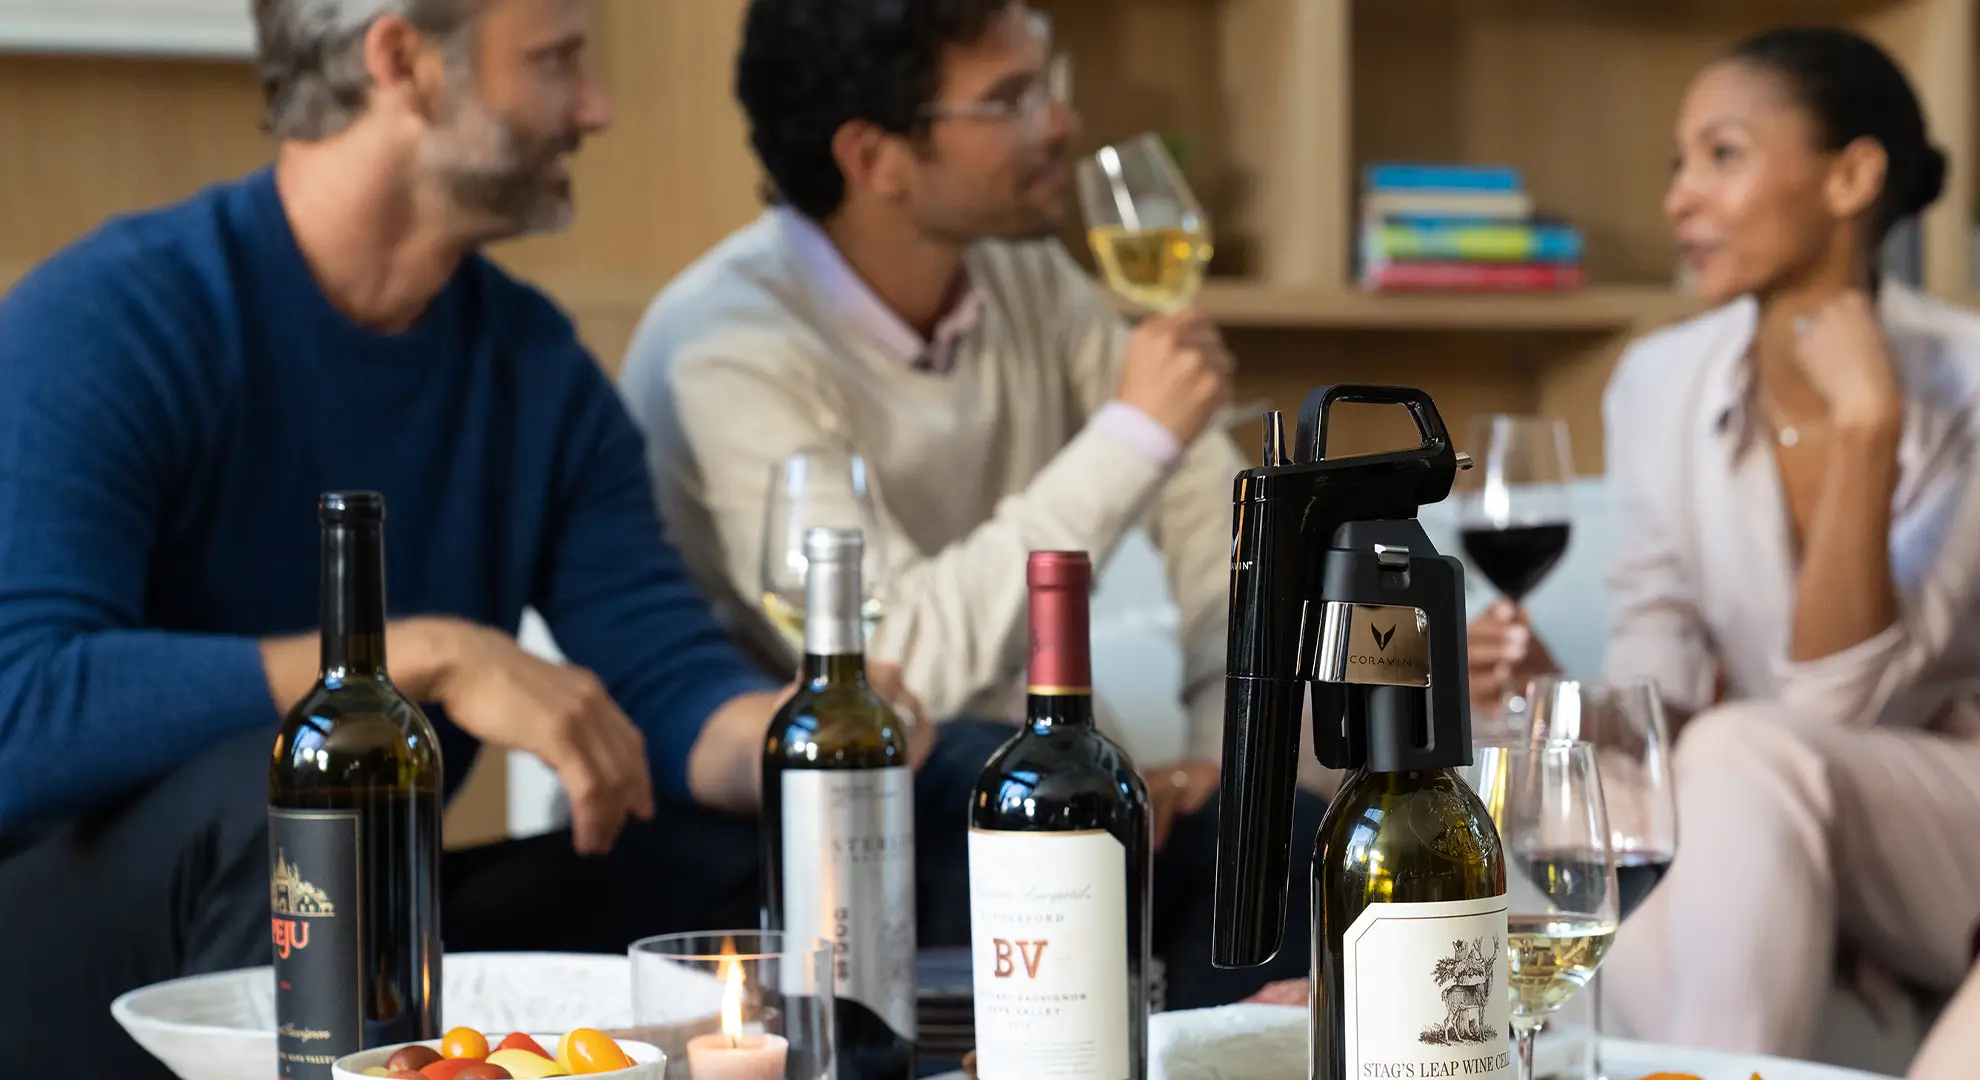 Amigos socializando en una sala de estar con vino y charcutería, junto con un Sistema de preservación de vino Coravin.
